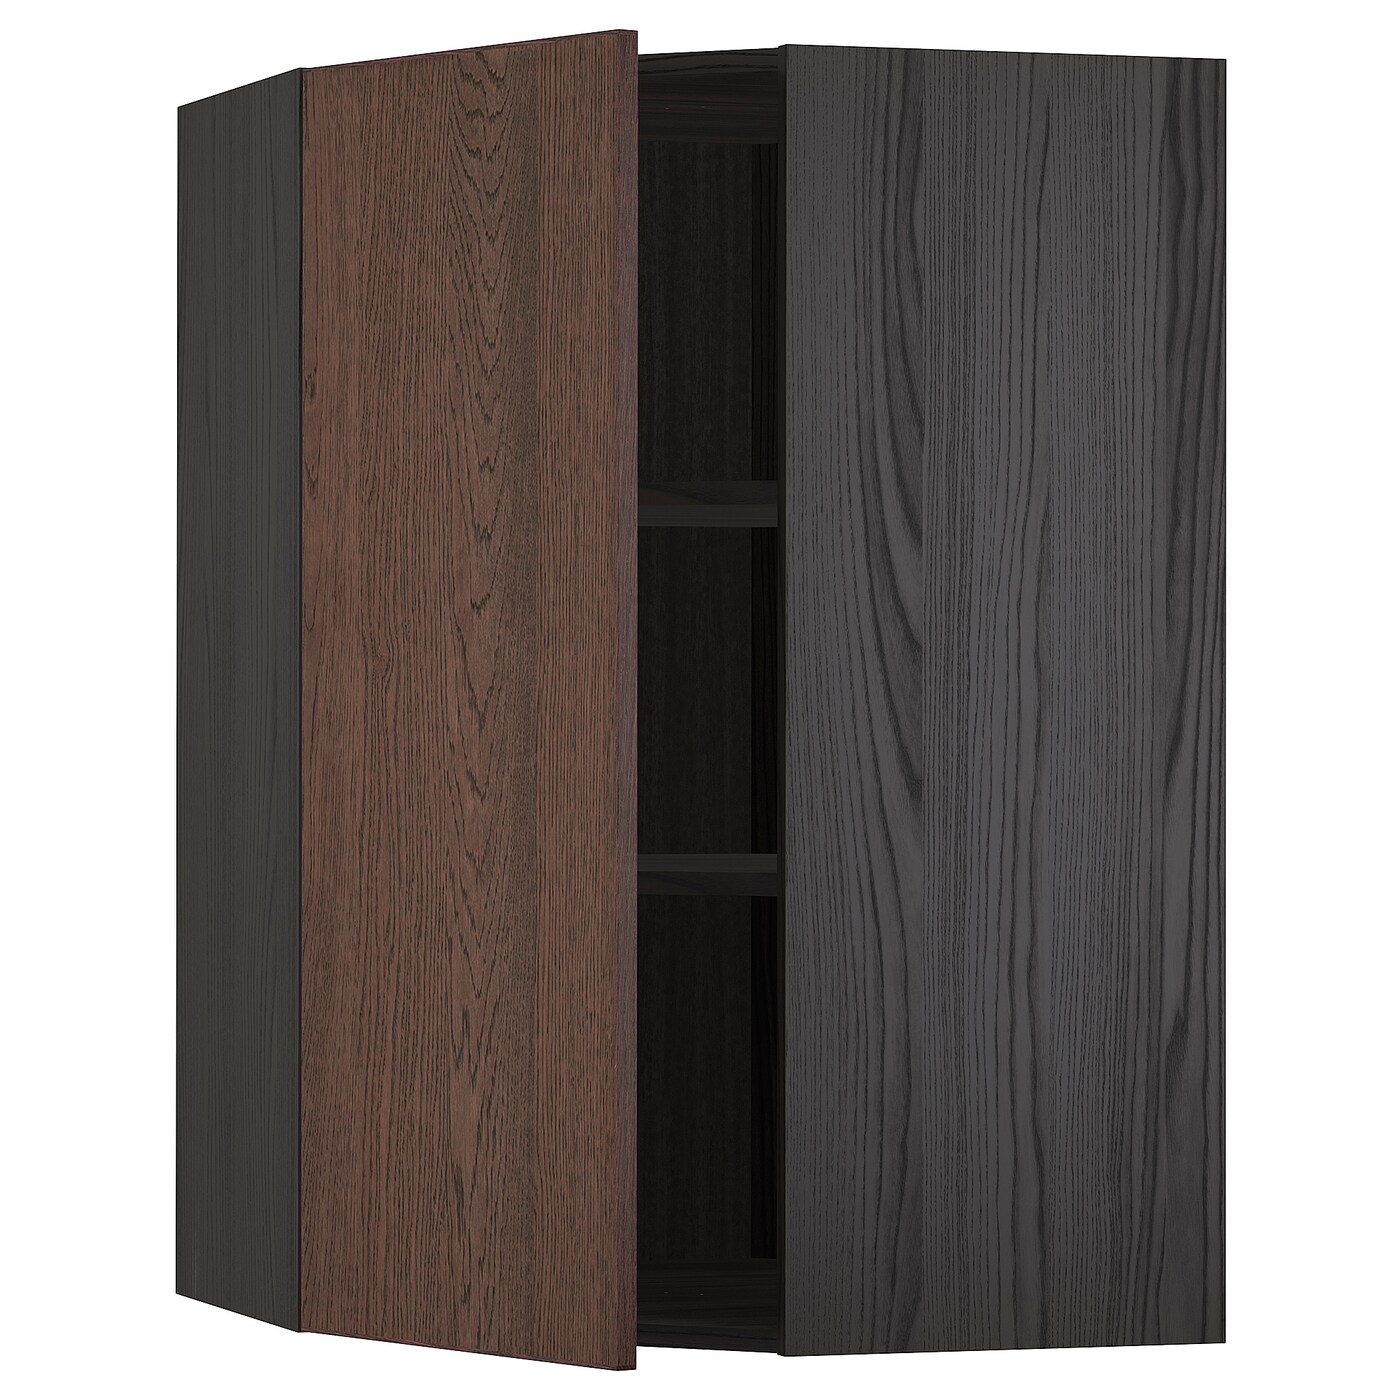 Угловой навесной шкаф с полками - METOD  IKEA/  МЕТОД ИКЕА, 100х68 см, черный/коричневый